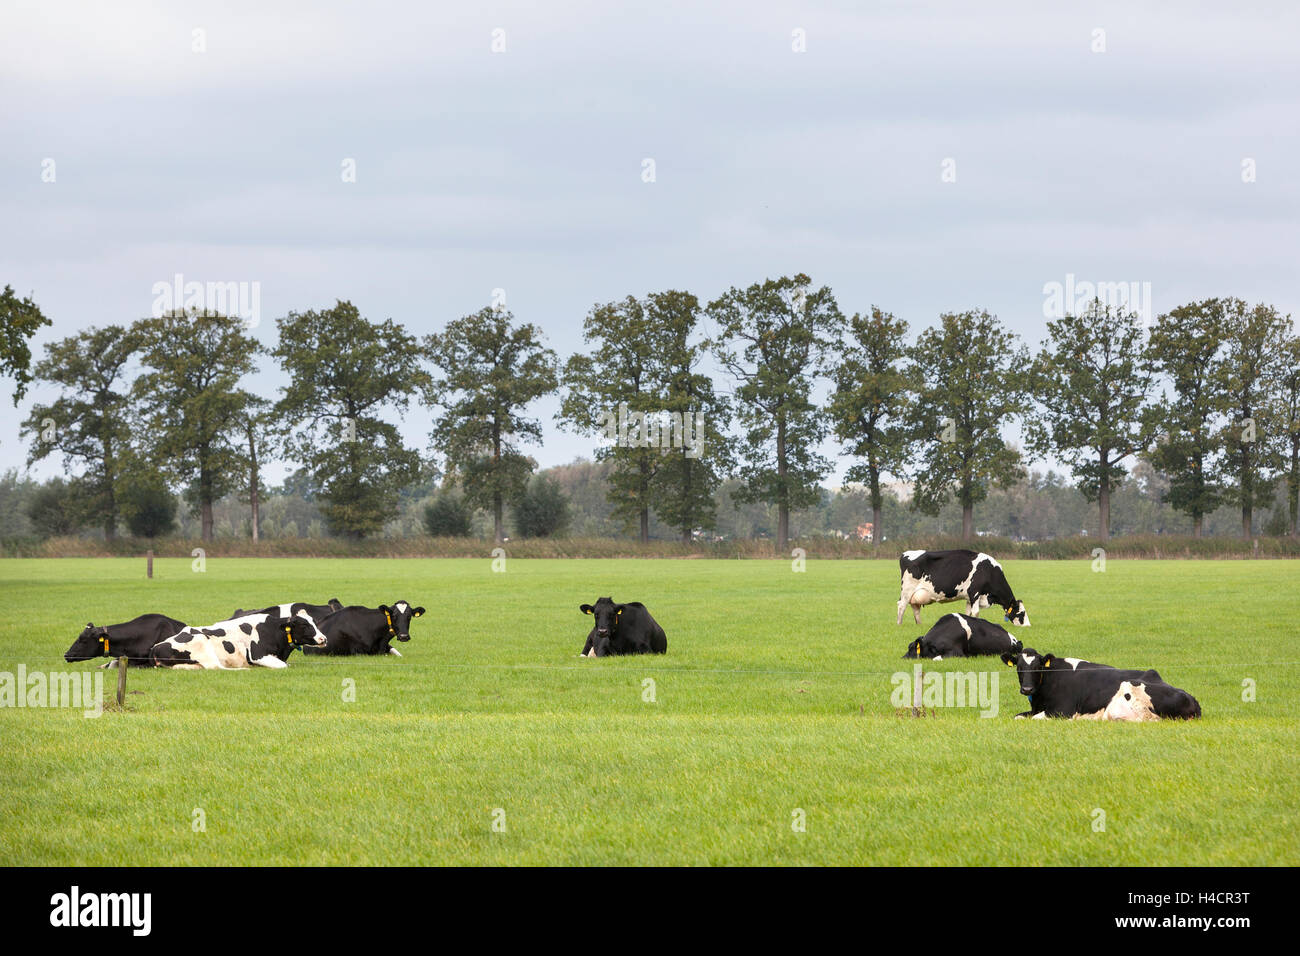 Les vaches noires et blanches se trouvent dans les champs avec des arbres dans la province néerlandaise d'Utrecht Banque D'Images